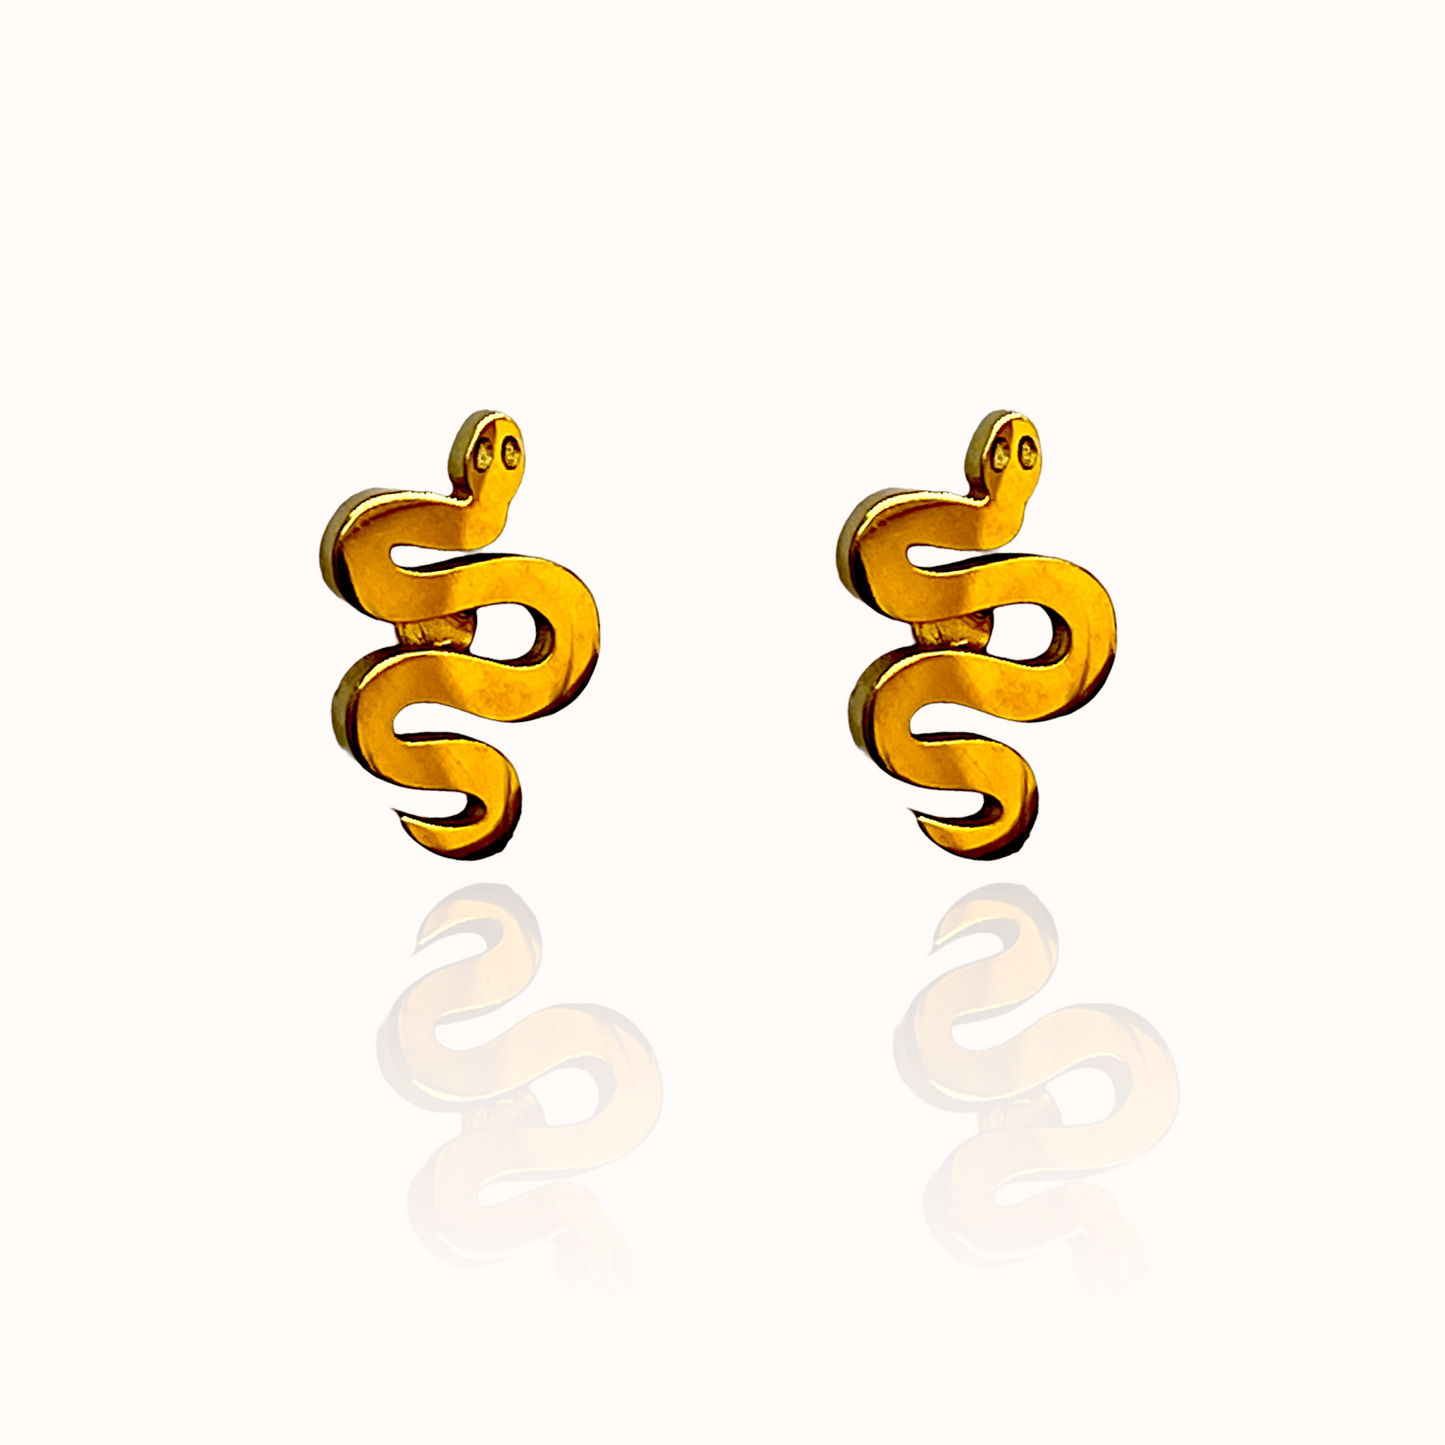 Serpent Earring Studs Gold